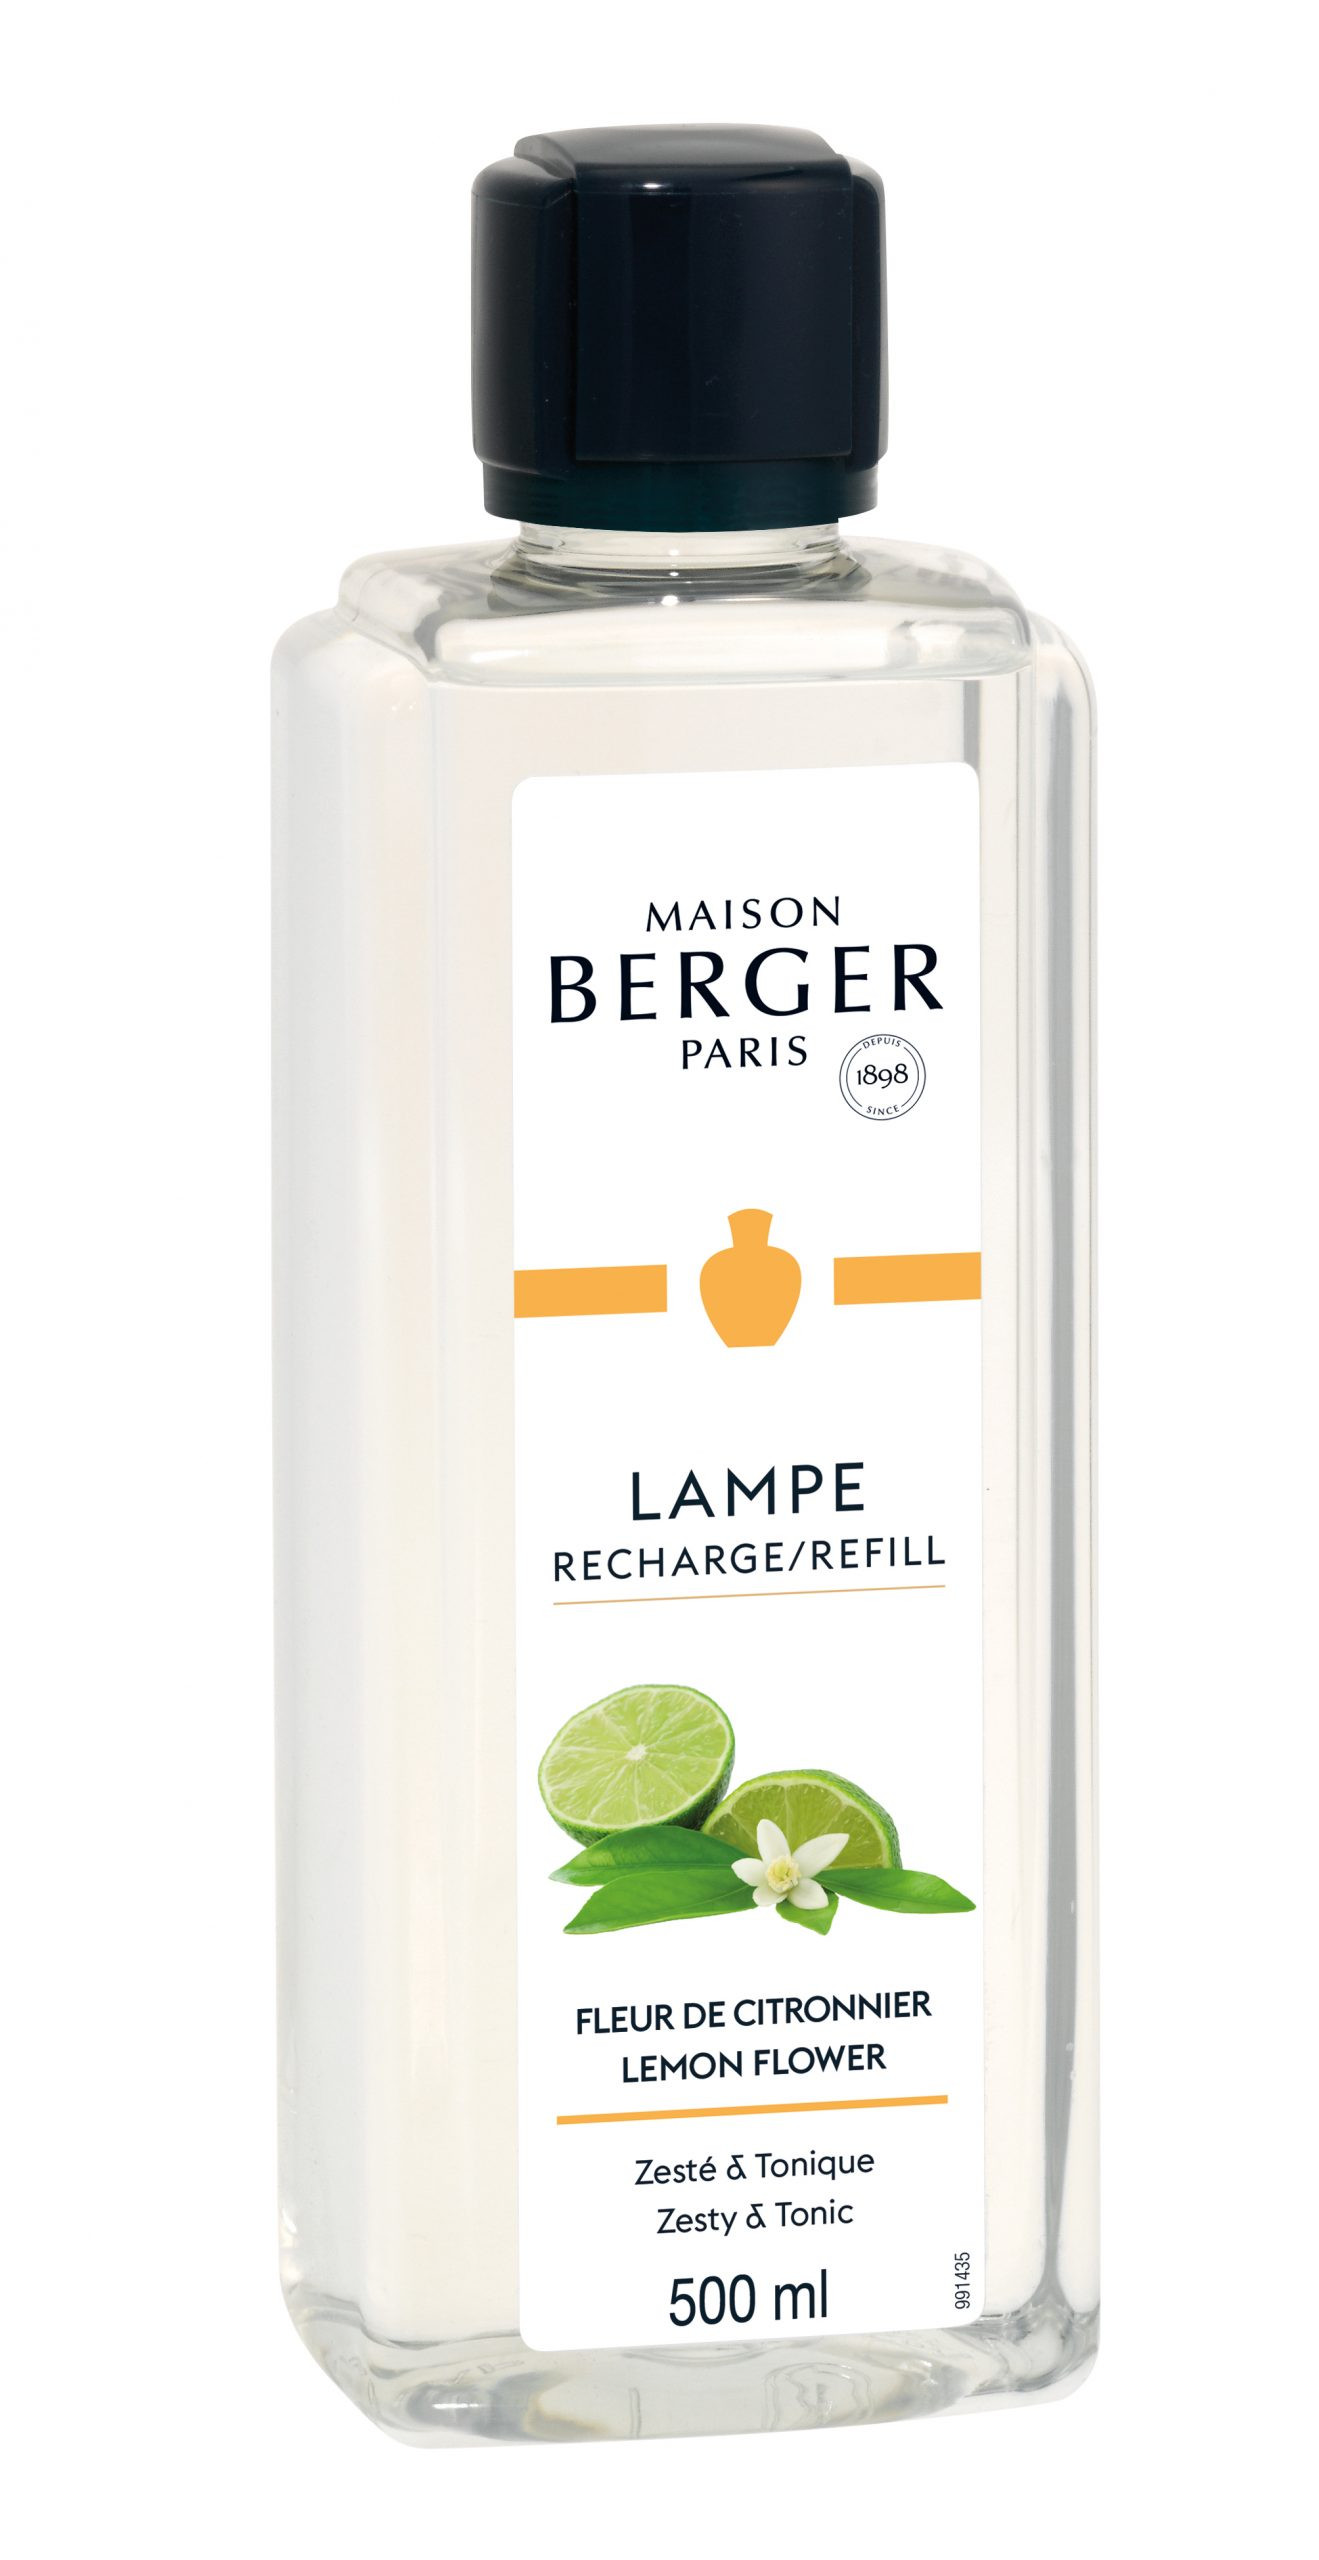 Maison Berger Paris - parfum Lemon Flower - 500 ml